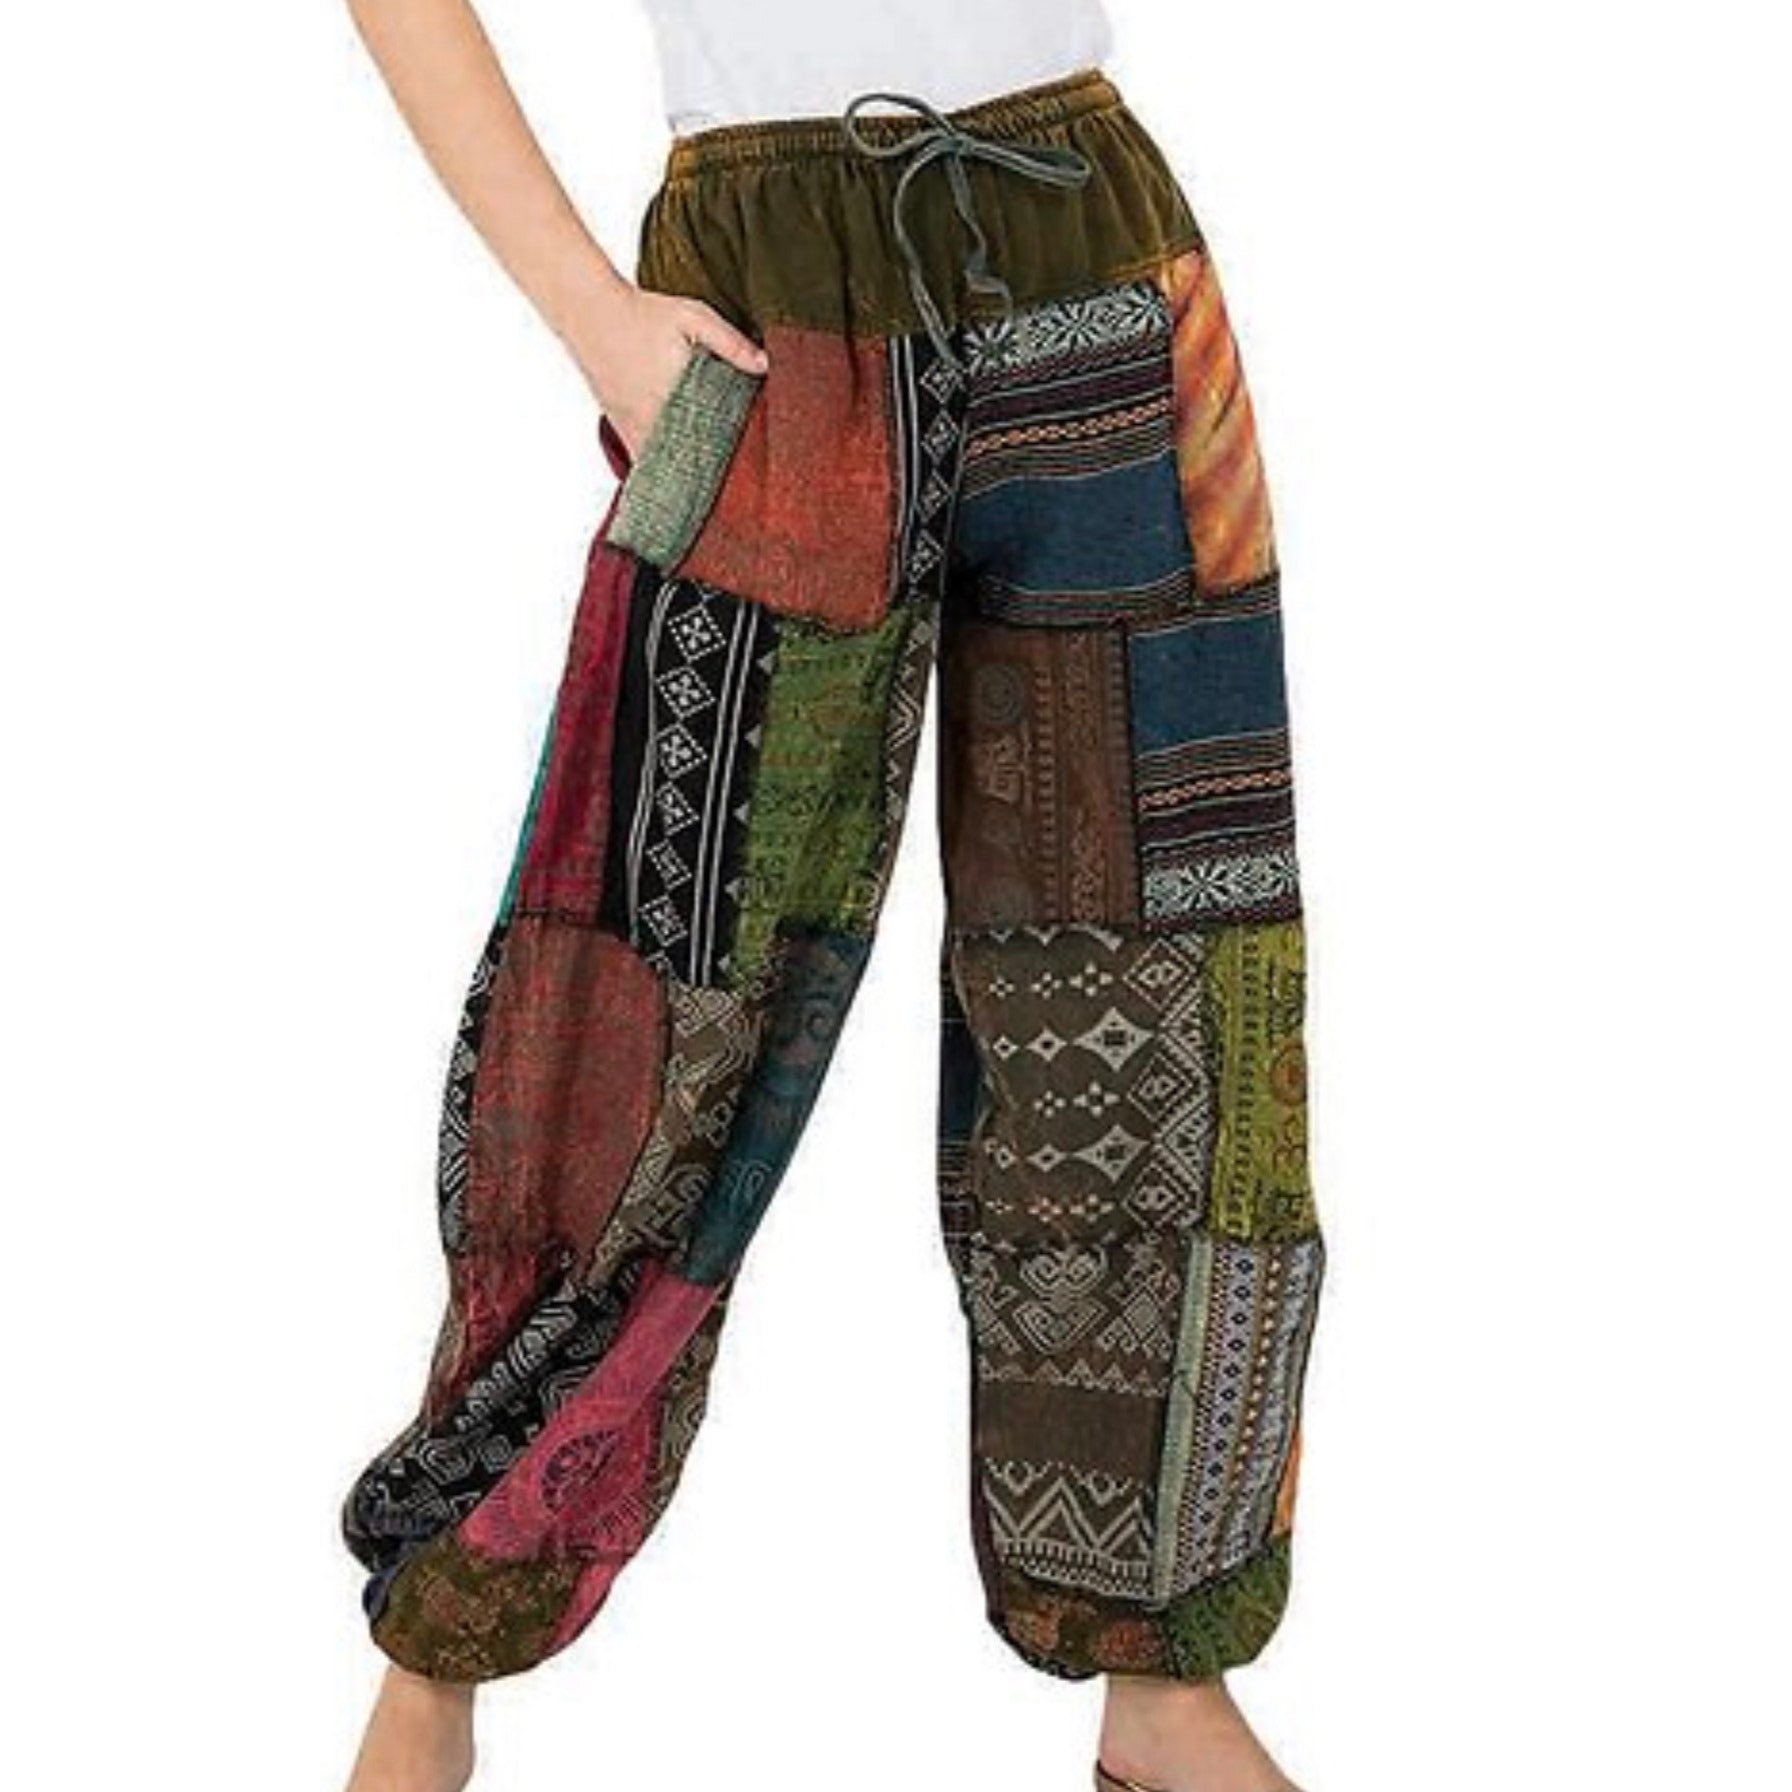 Black Feather Print Yoga Pants | Hippie-Pants.com – Hippie Pants